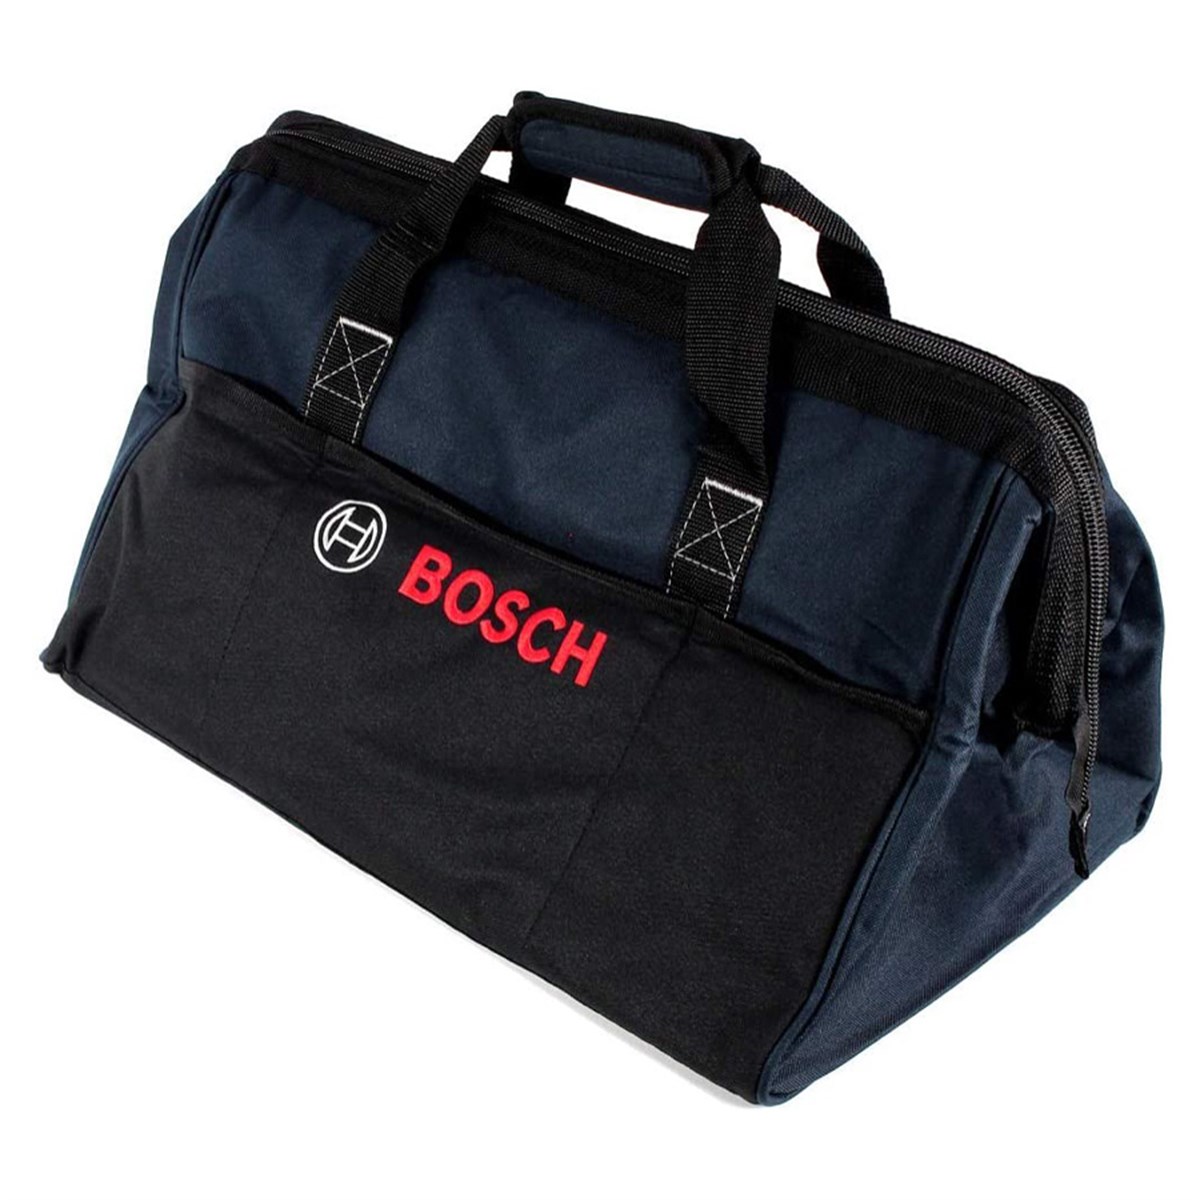 Bosch Bez Takım Alet Çantası 1619BZ0100 - 7Kat